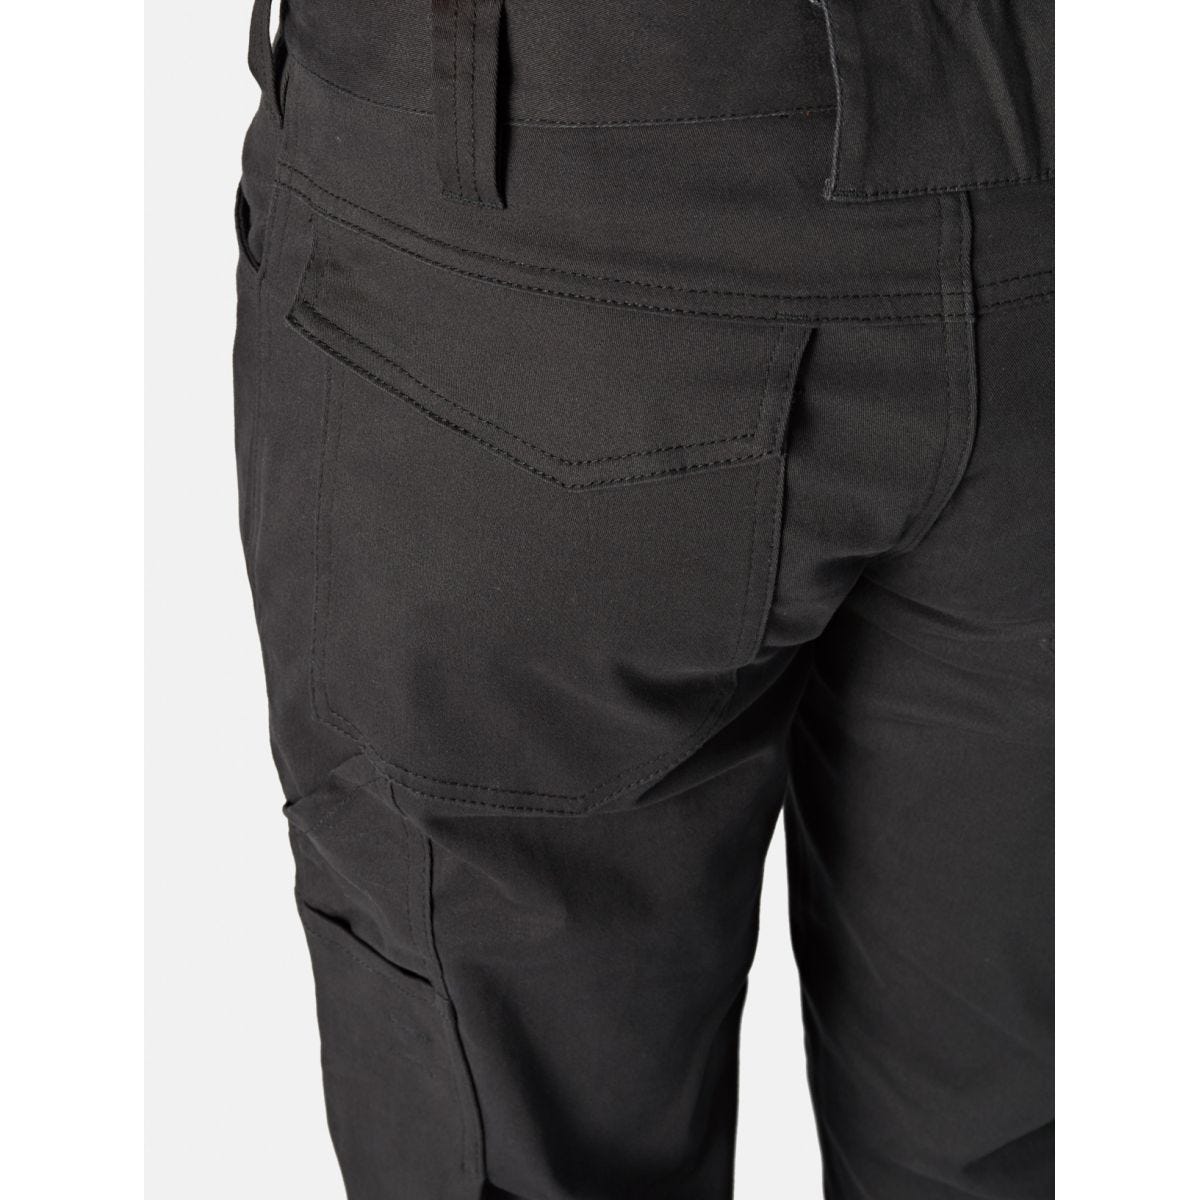 Pantalon Lead In Flex Noir - Dickies - Taille 46 2